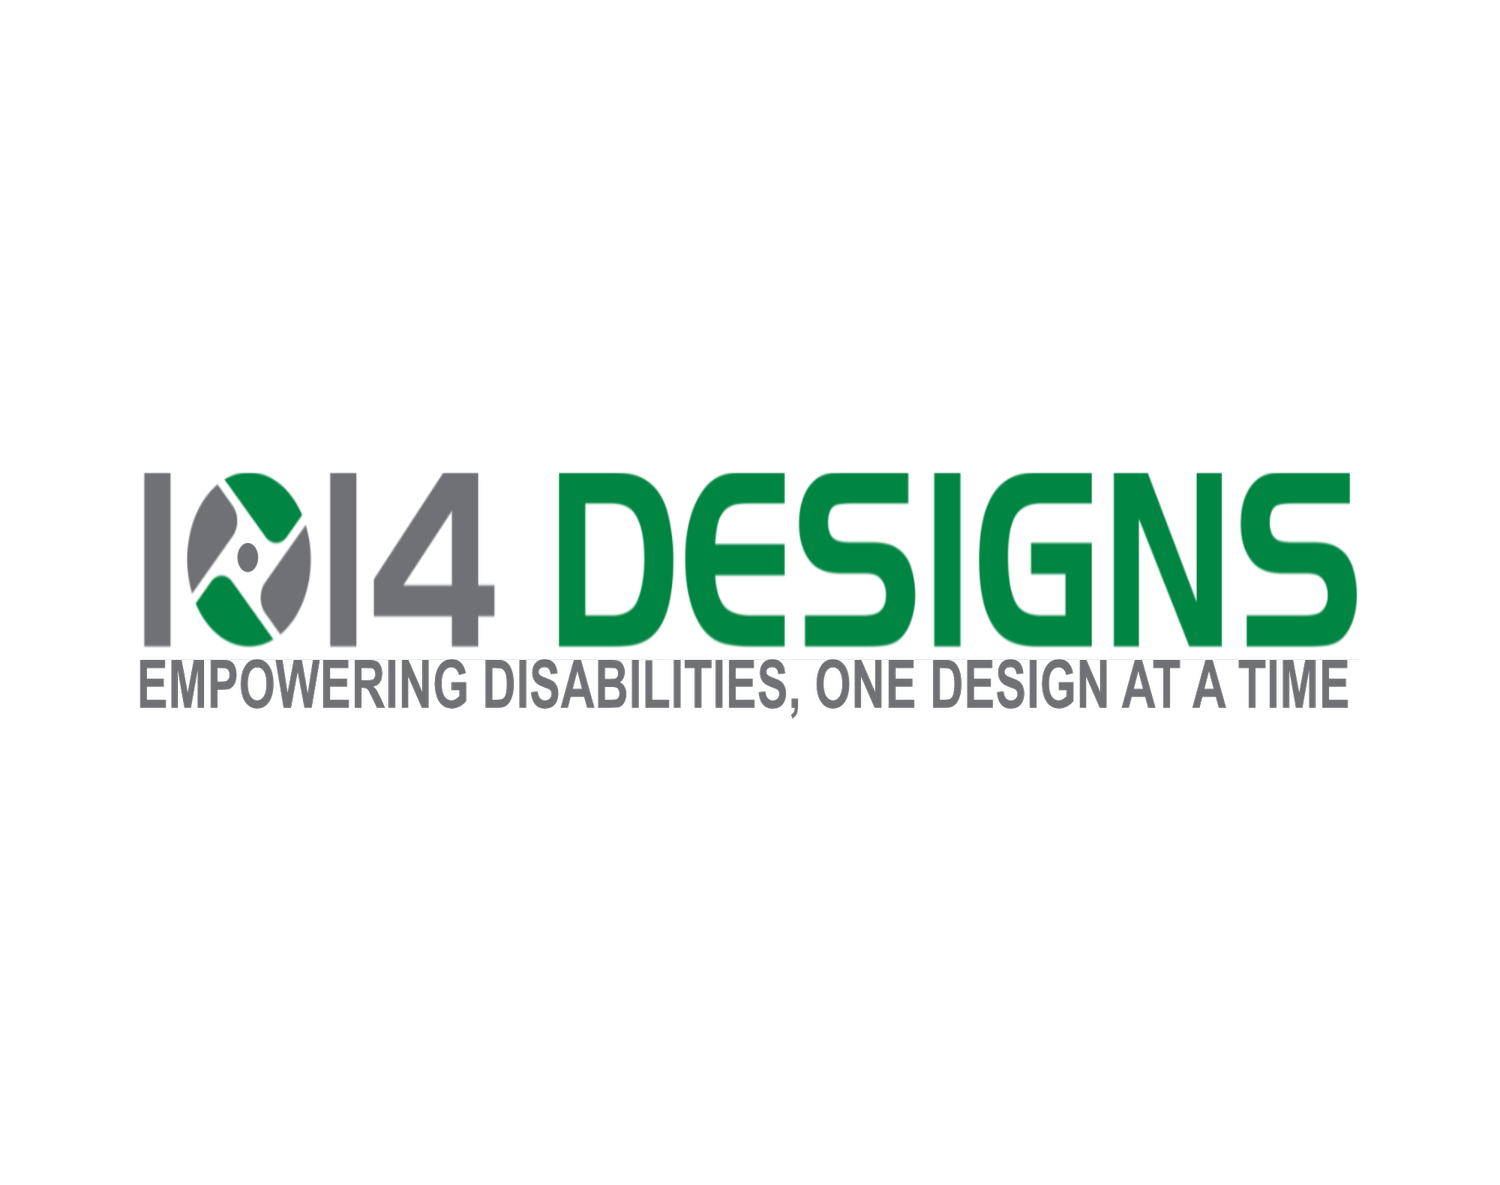 1014 Designs